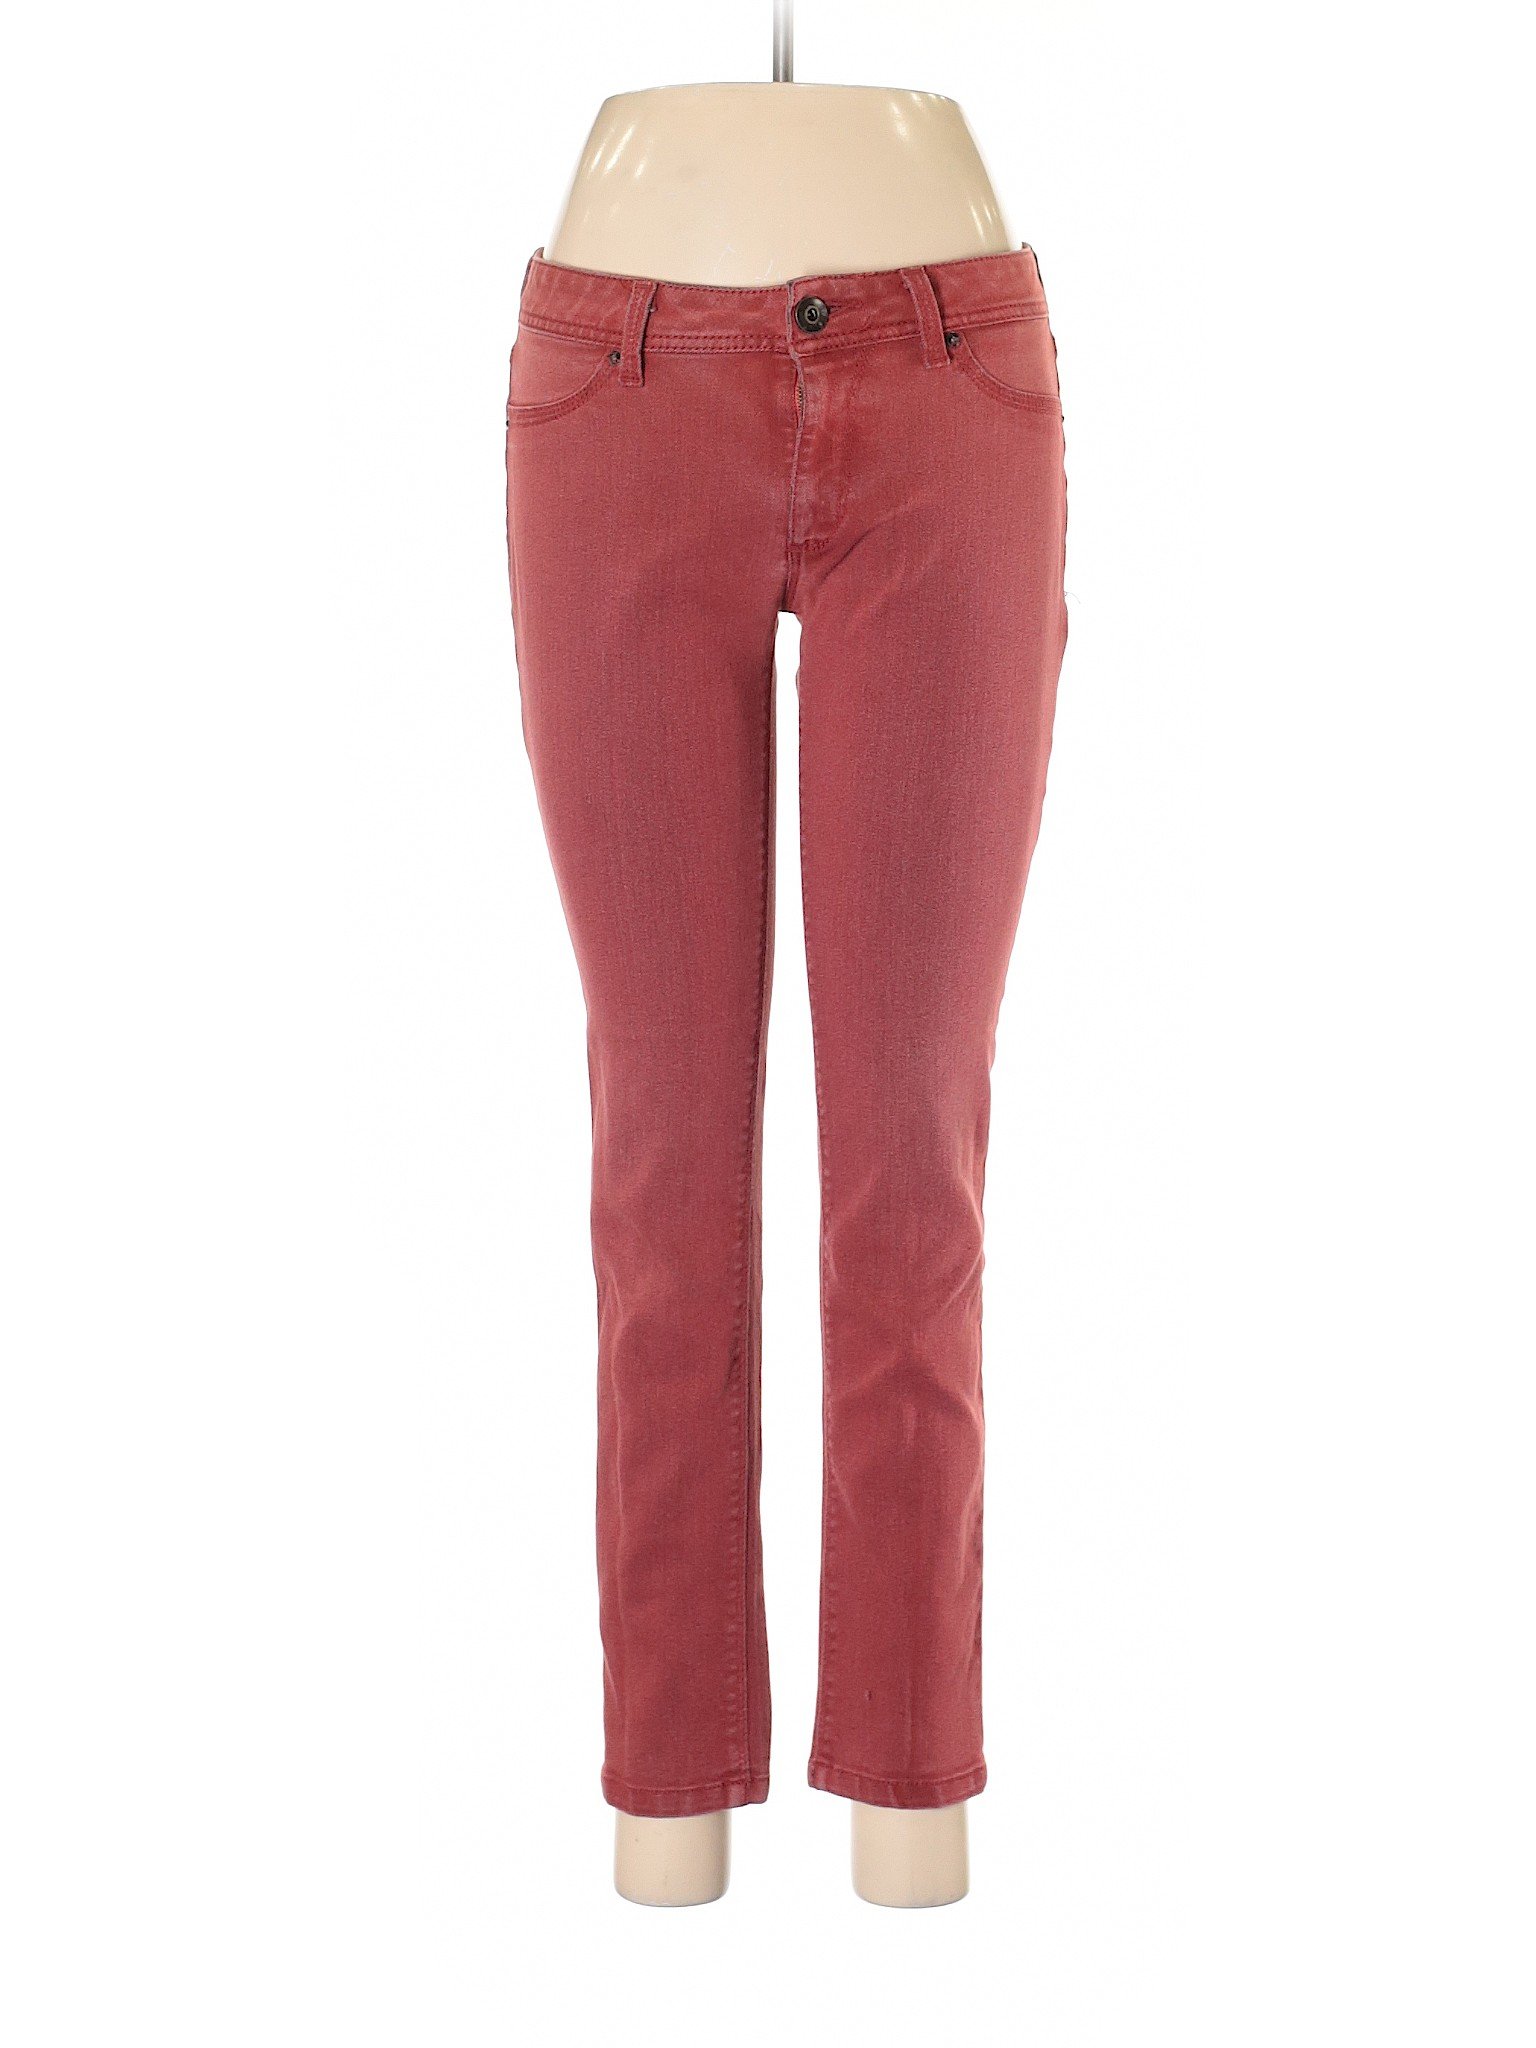 DL1961 Women Red Jeans 29W | eBay